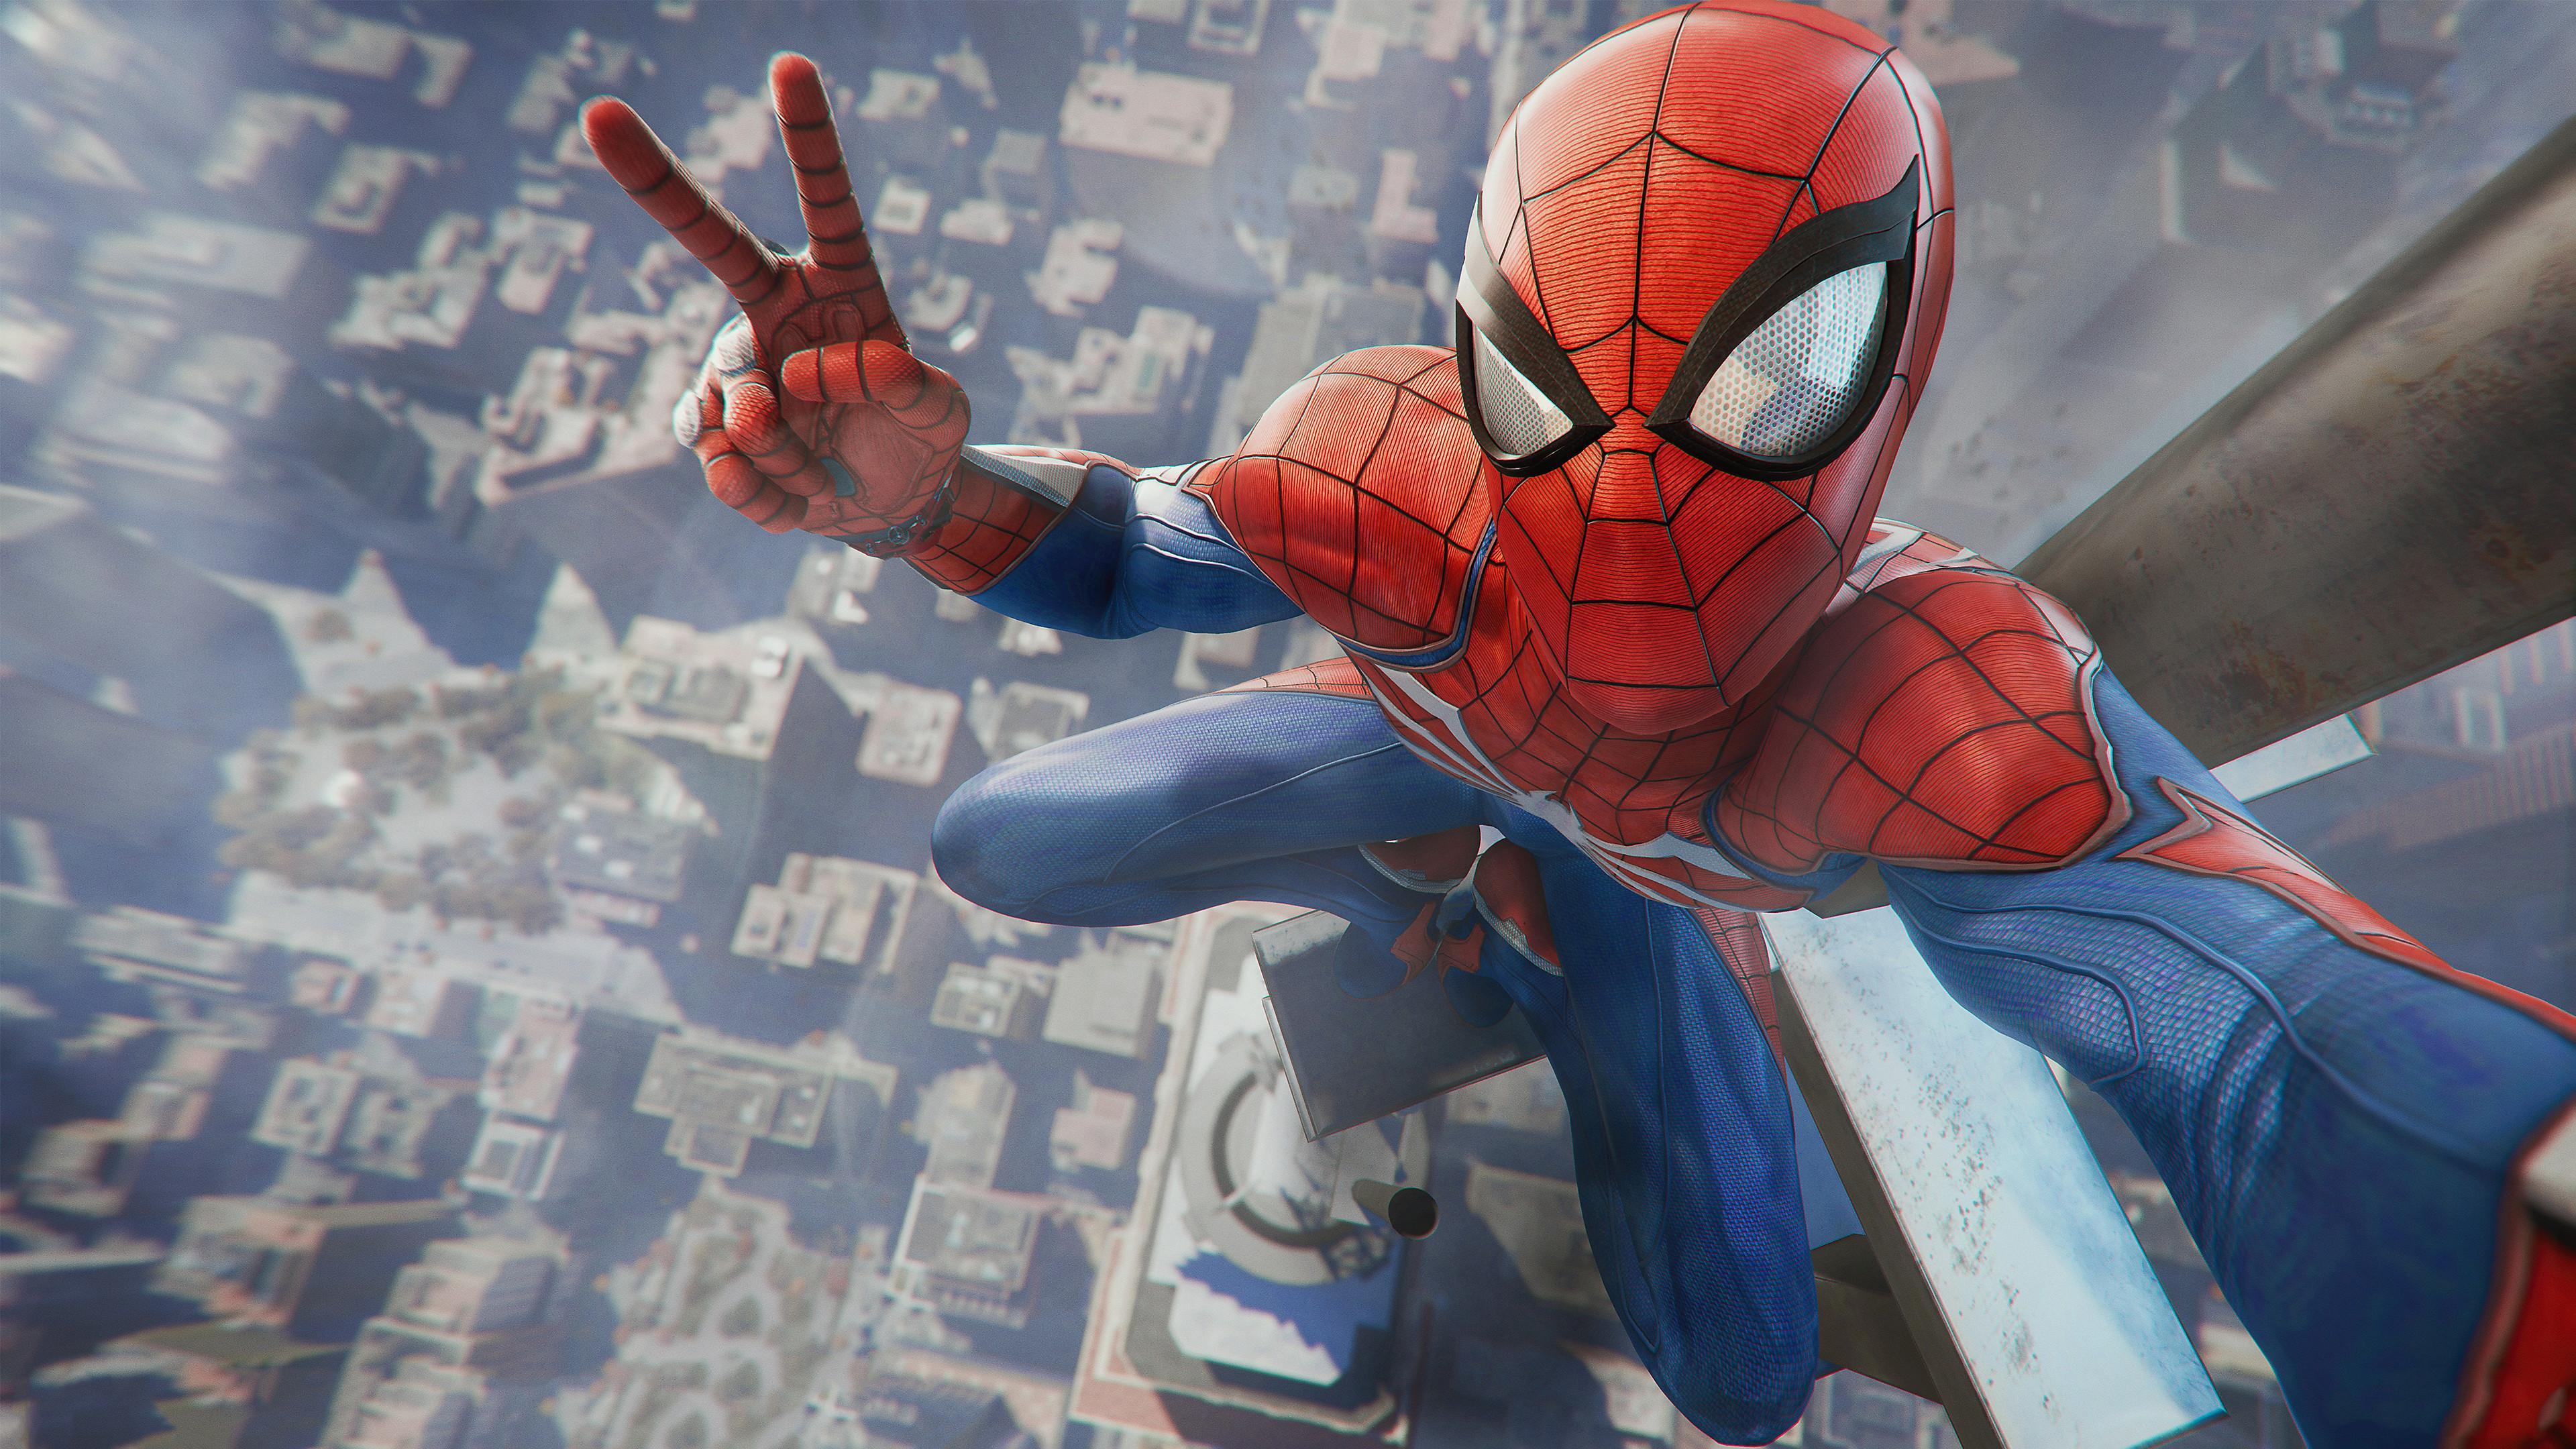 Là một fan cuồng của Spider-Man, bạn chắc chắn sẽ muốn có hình nền Spider-Man cho PC của riêng mình. Với nhiều tùy chọn đa dạng và sắc nét, bạn có thể tùy chỉnh màn hình Desktop theo phong cách của siêu anh hùng tuyệt vời này. Nhấn vào để xem và tải miễn phí hình nền Spider-Man cho PC ngay.